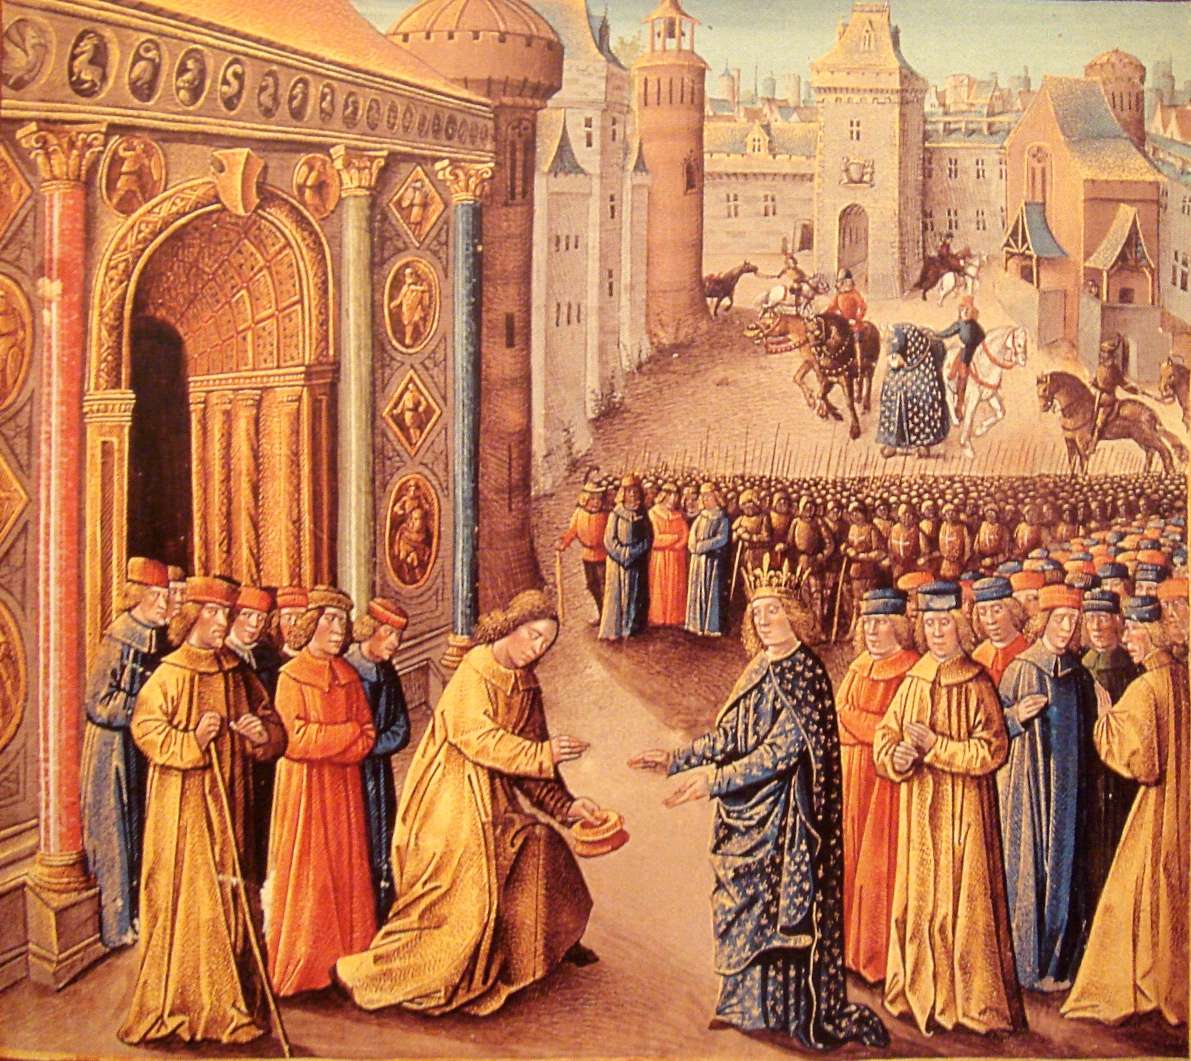 Ο Ραϋμόνδος του Πουατιέ δέχεται τον βασιλιά της Γαλλίας Λουδοβίκο Ζ´ στην Αντιόχεια - μικρογραφία 15ου αιώνα.